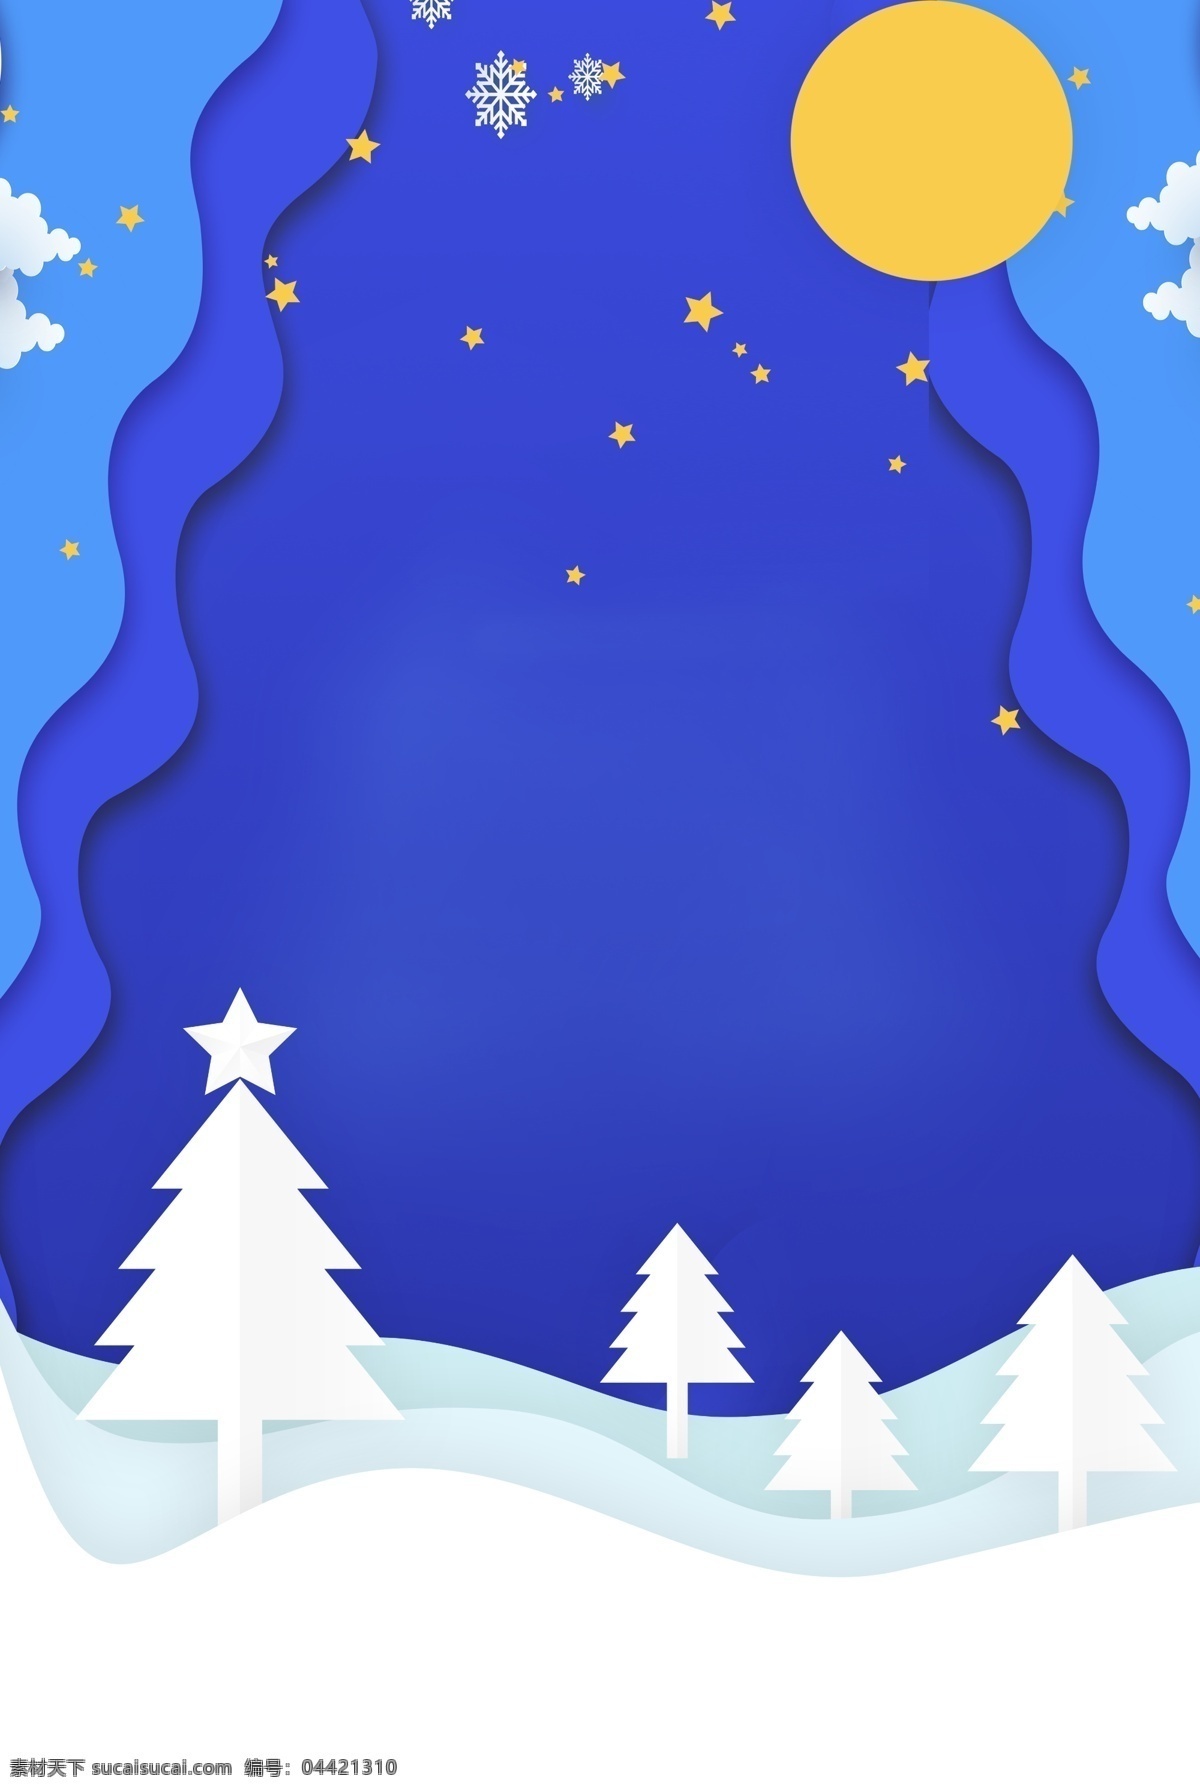 圣诞节 卡通 剪纸 风 海报 背景 圣诞树 雪地 雪景 剪纸风 星星 蓝色 圣诞礼物 圣诞活动